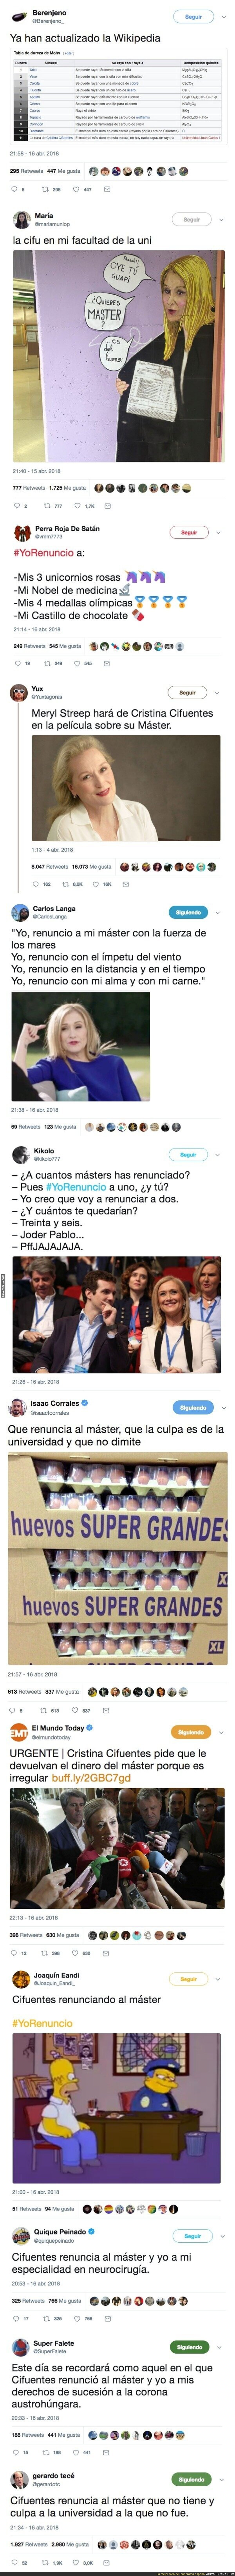 Cristina Cifuentes renuncia a su 'máster' y Twitter se llena de mofas contra ella